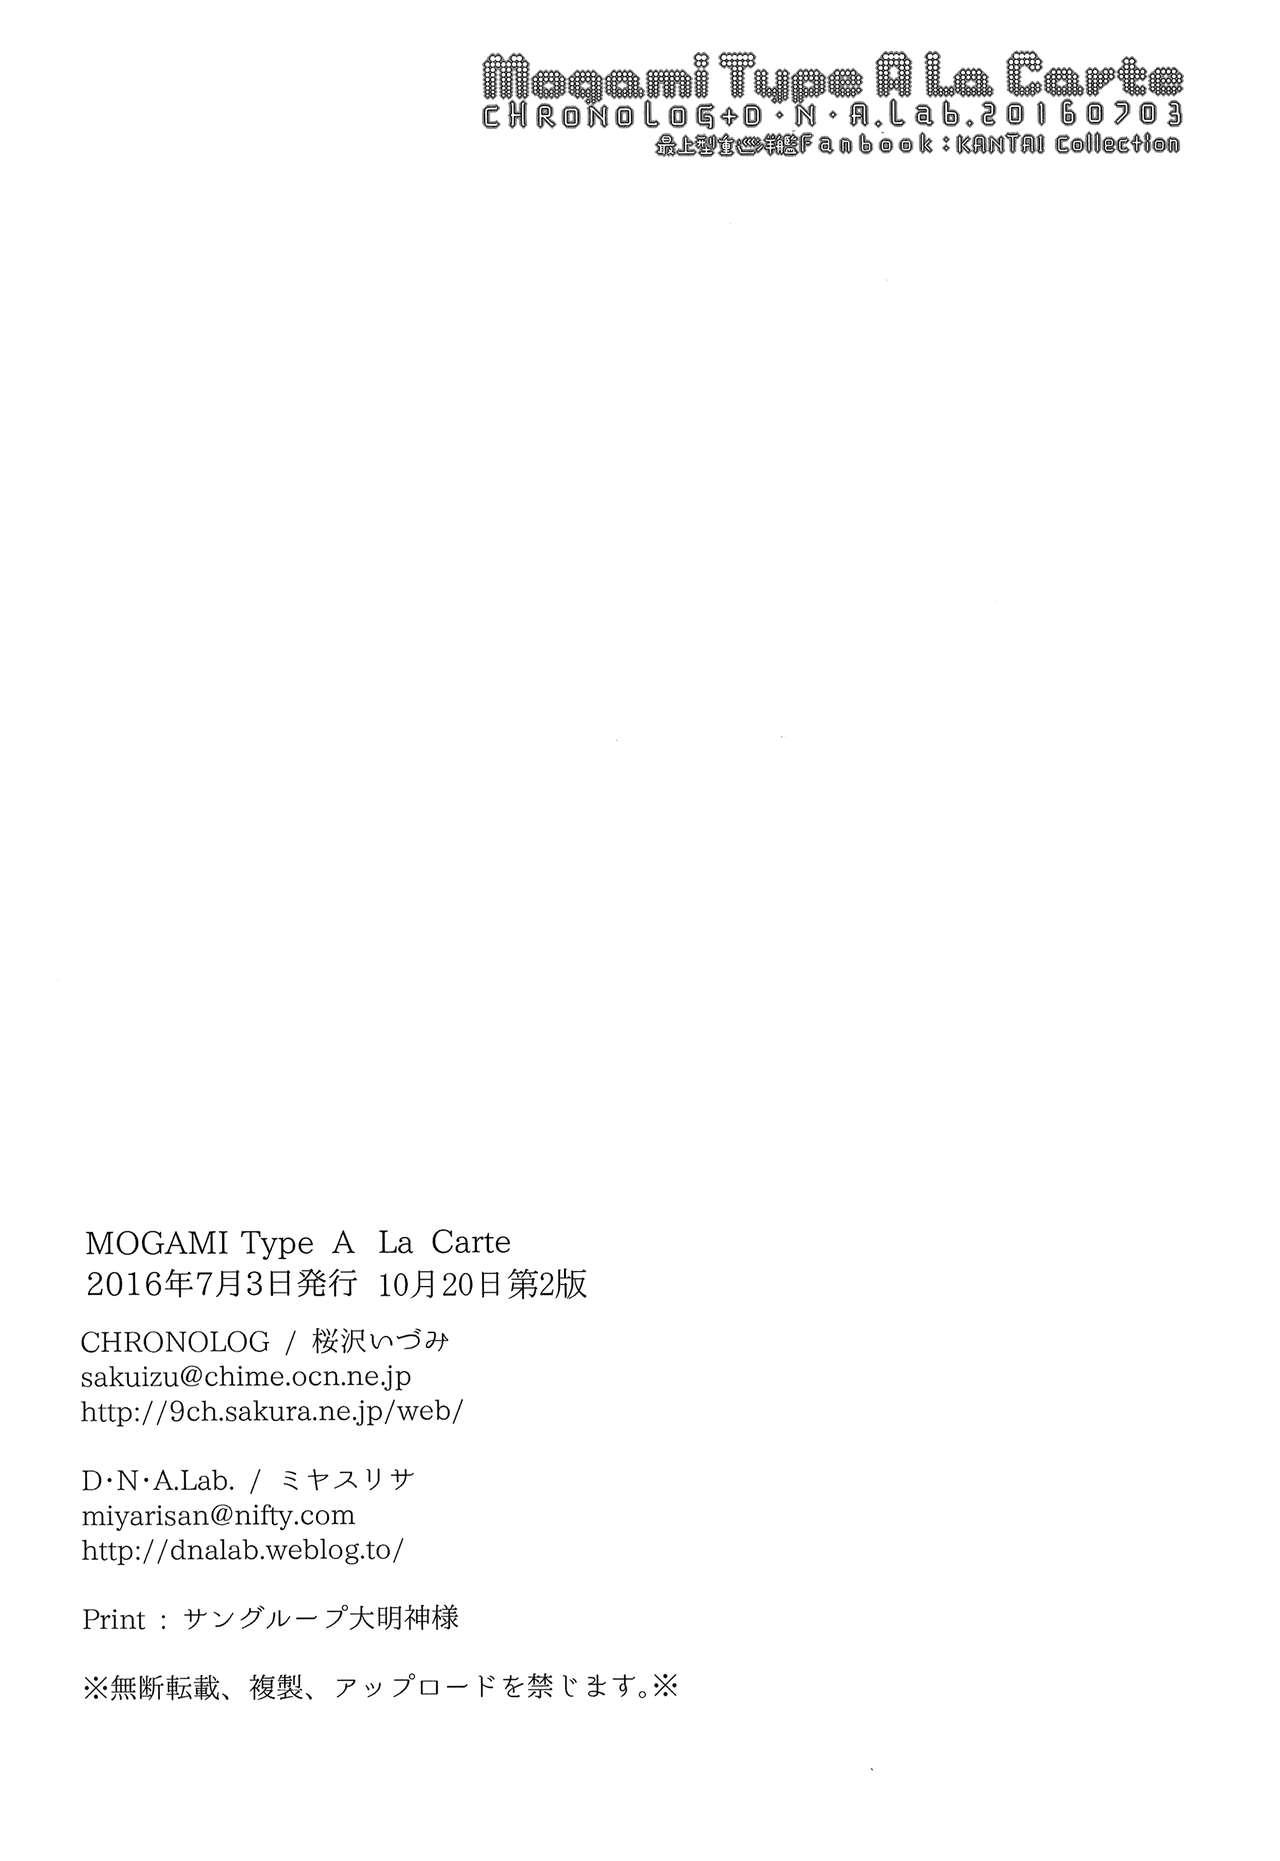 Mogami Type A La Carte 35